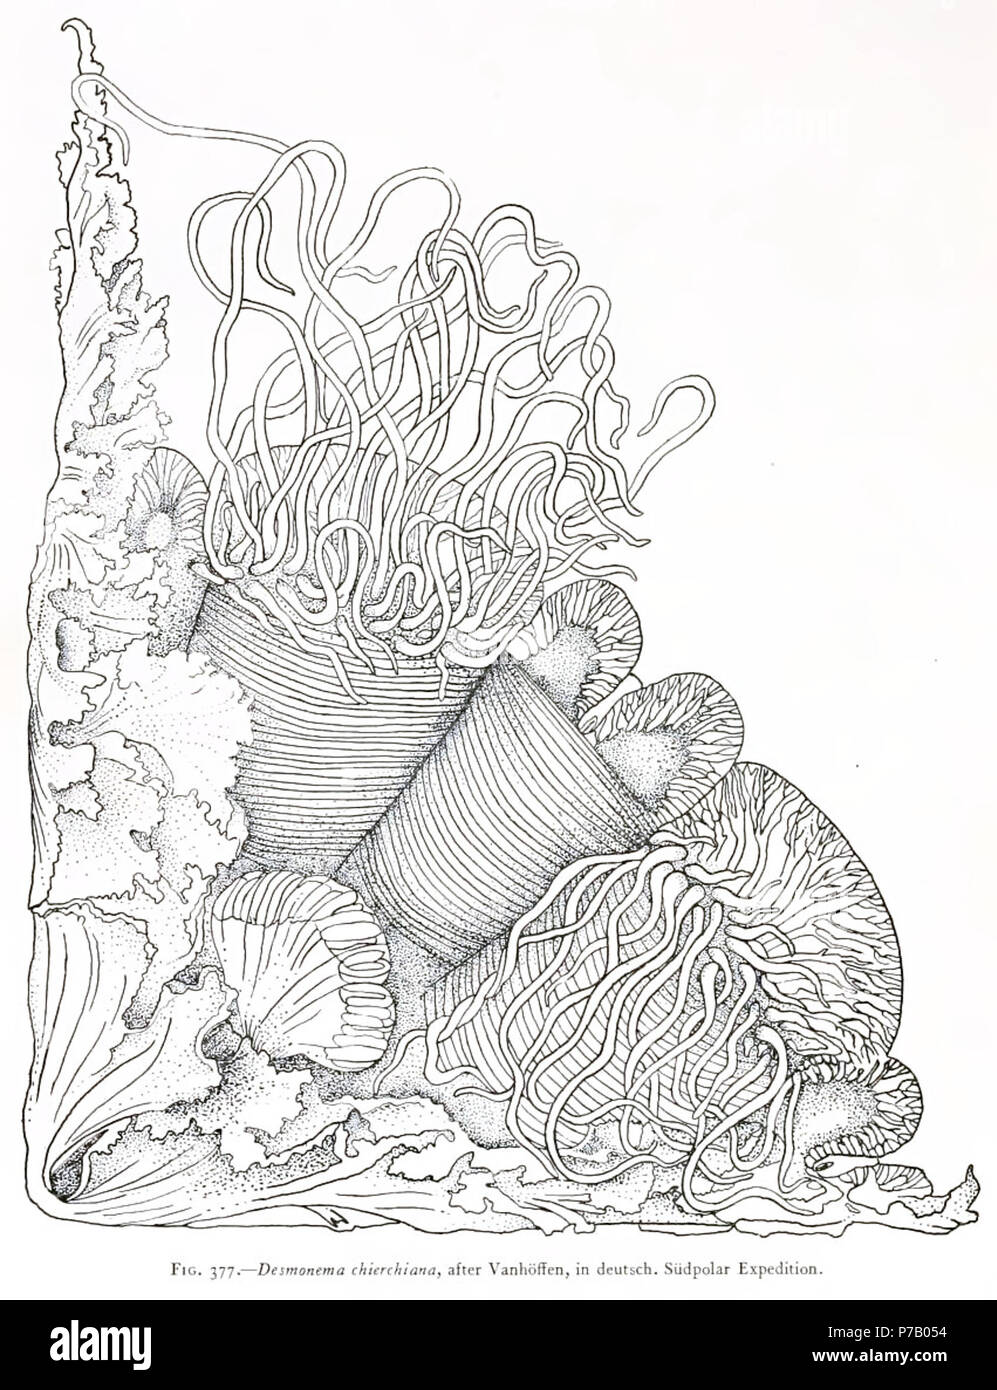 Italiano: Desmonema chierchianum (o D. chierchiana), secondo Vanhöffen, Spedizione polare. 25 August 1910 57 Medusae of world-vol03 fig377 Desdemona chierchiana Stock Photo